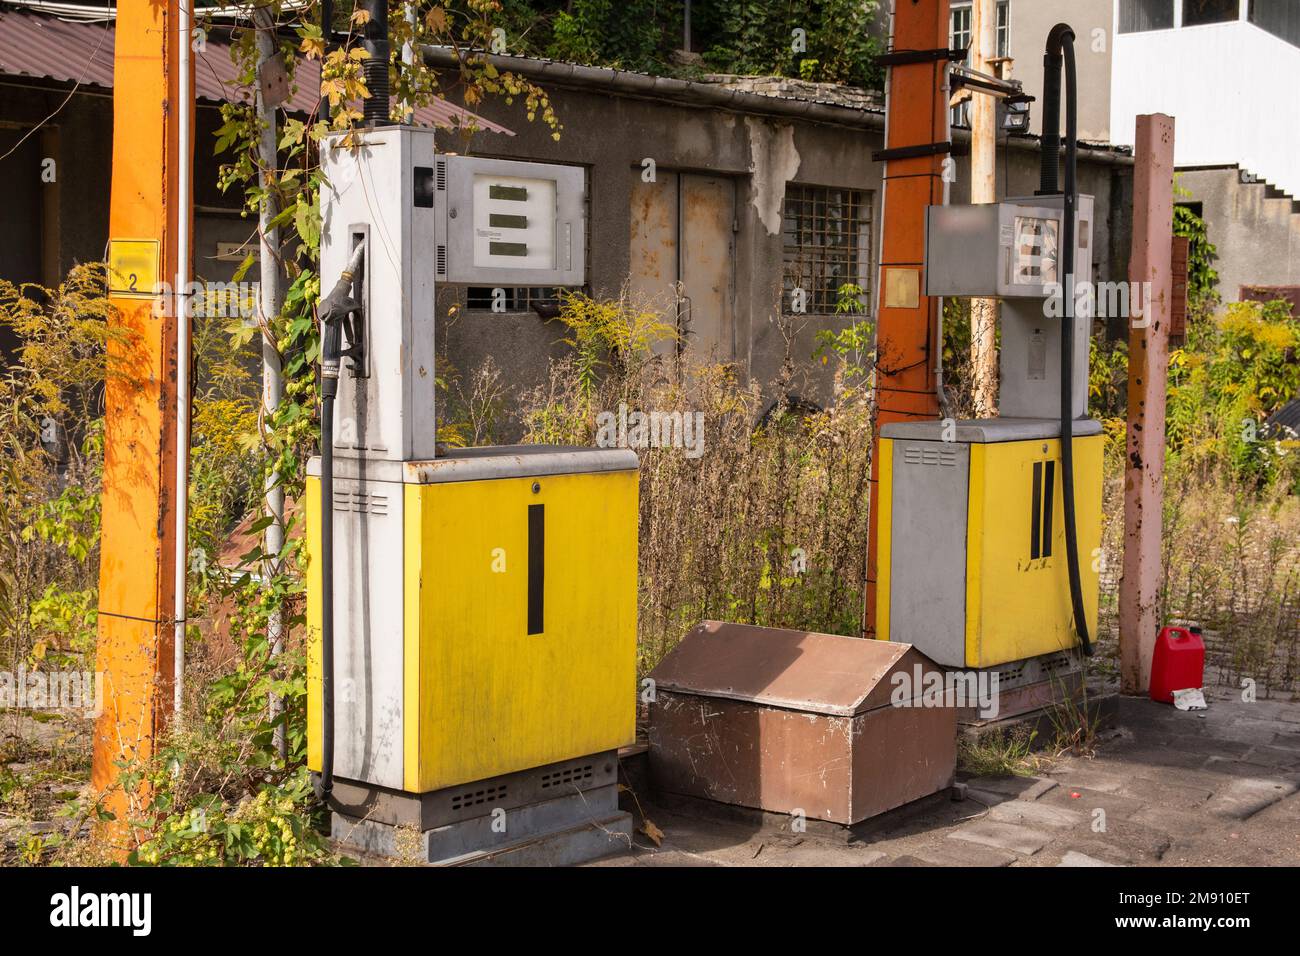 Une ancienne station de gaz rouillé et des distributeurs abandonnés et surcultivés avec de la végétation par une journée ensoleillée. Été. Banque D'Images